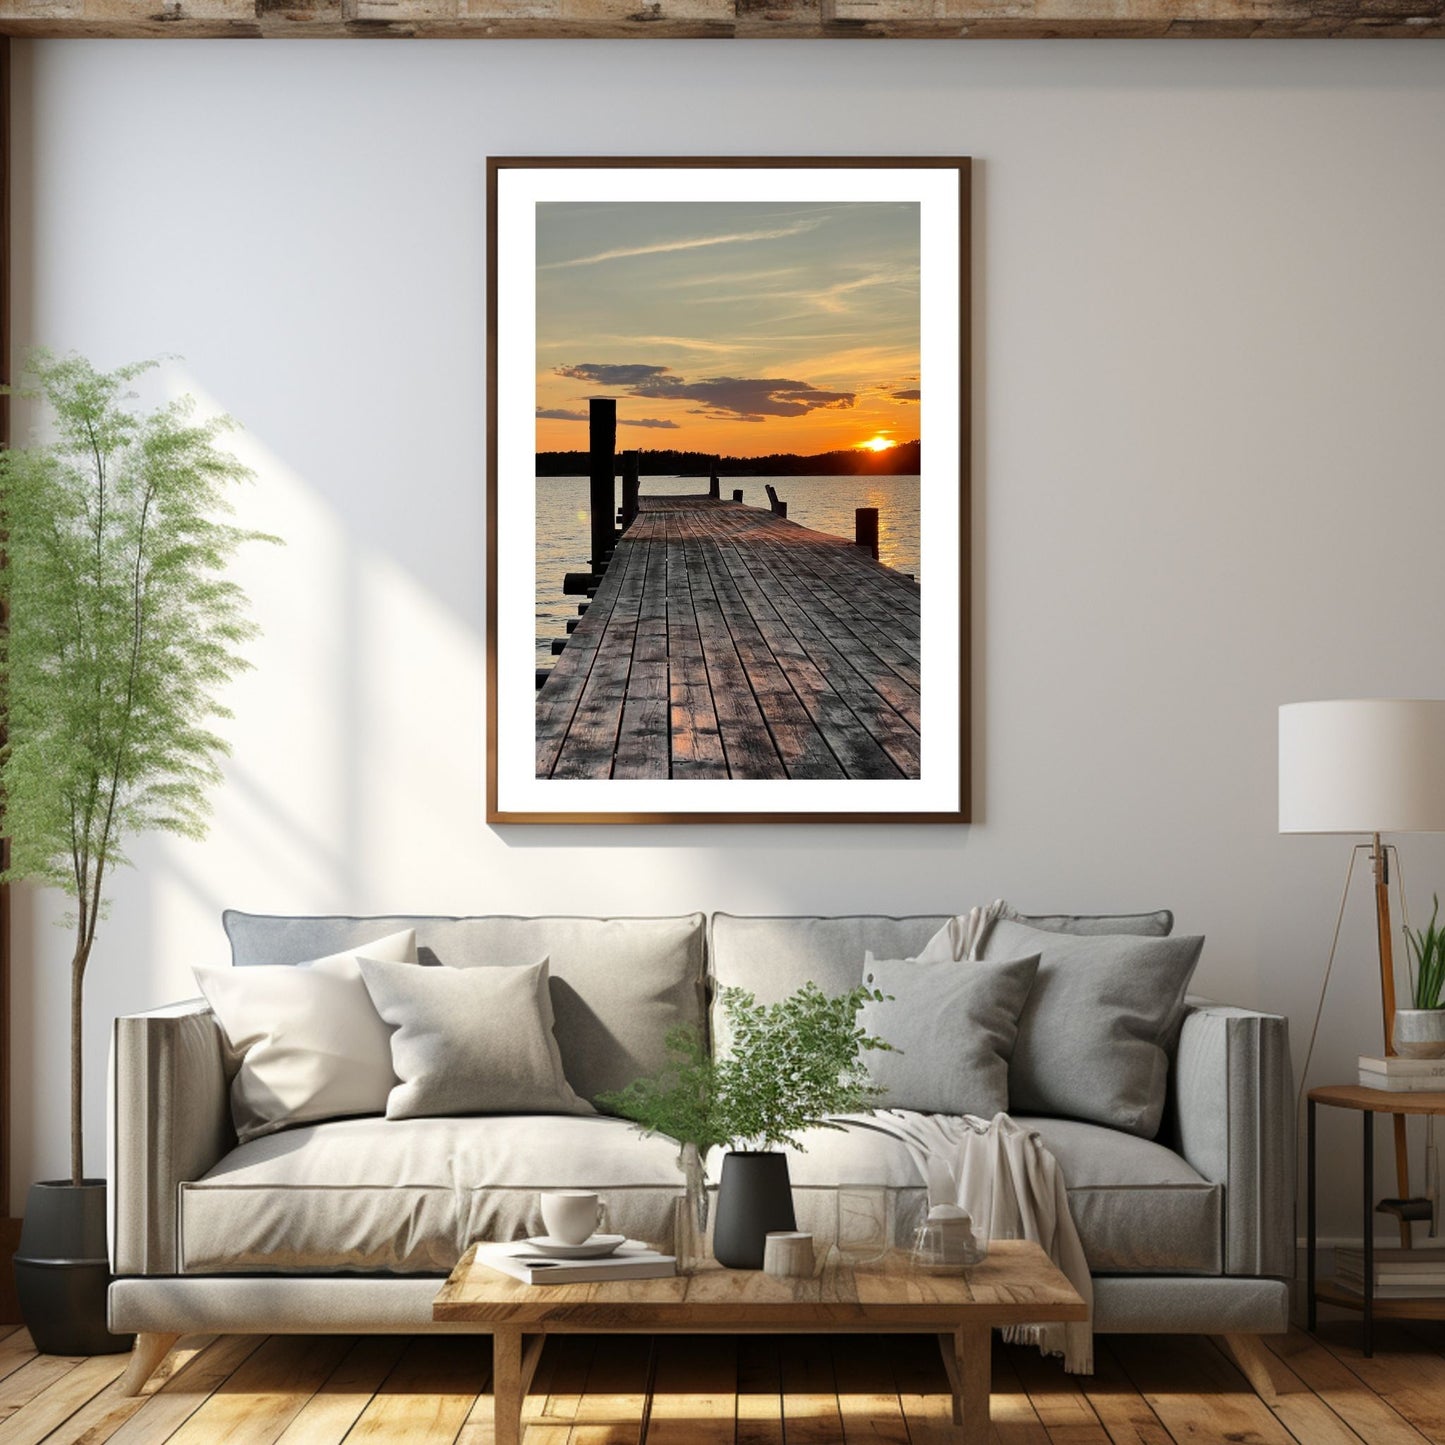 Nydelig solnedgang ved Krokstadfjorden ved Saltnes. Motiv av en brygge som går ute i sjøen, og en sol som er i ferd med å gå ned på en oransje himmel. Fås både som plakat og på lerret. Miljøbildet viser plakaten i en eikeramme som henger på en vegg over en sofa.